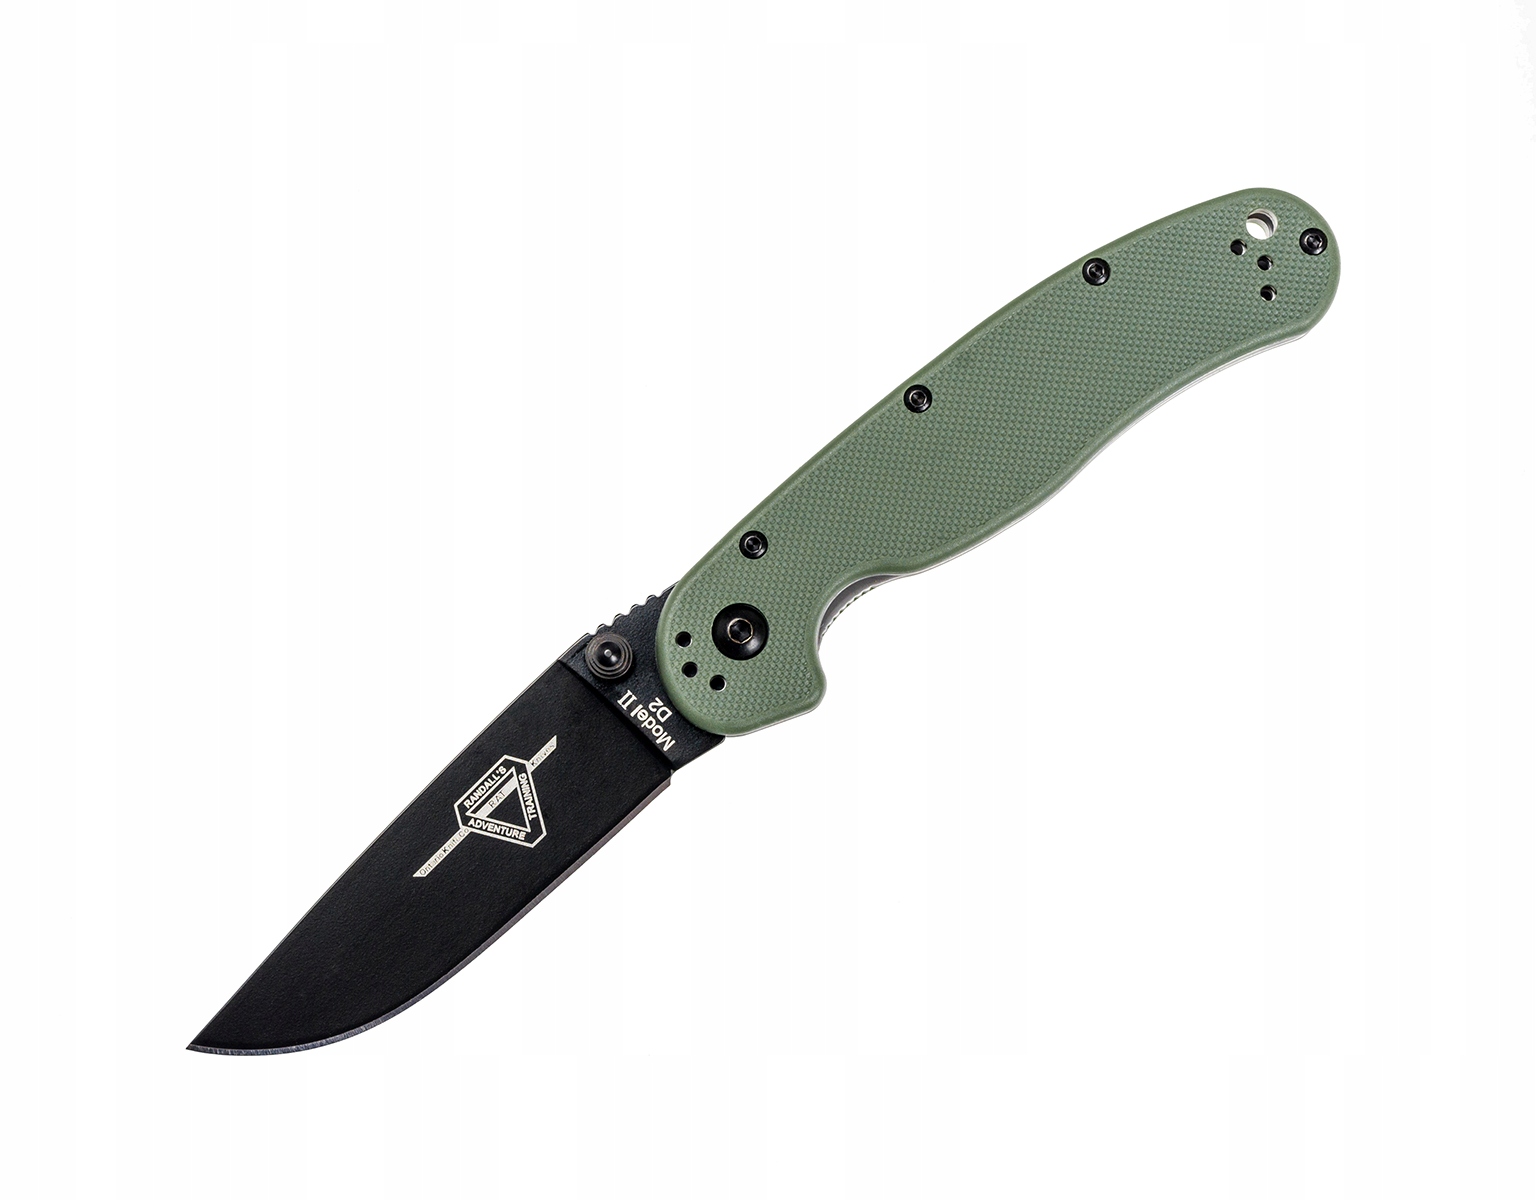 Складной нож Ontario Rat 2 папка из зеленого D2